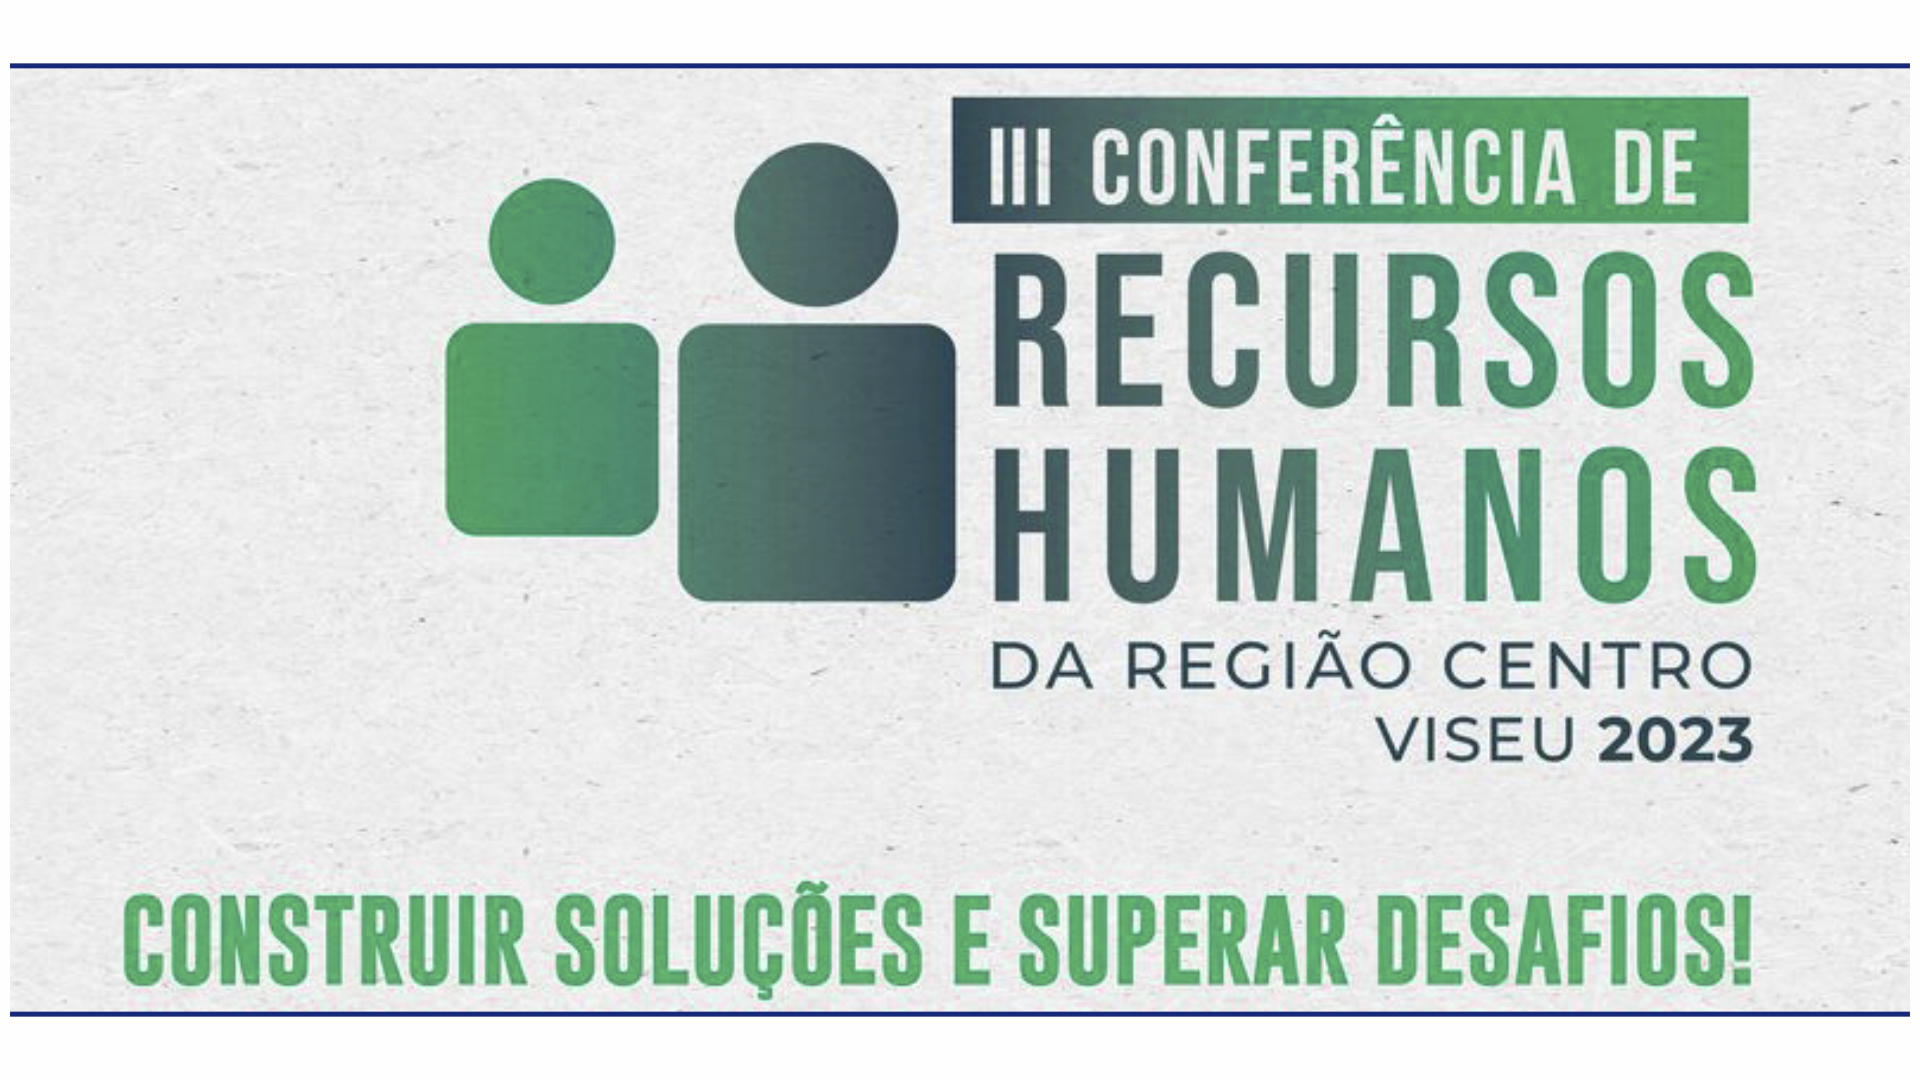 III Conferência de Recursos Humanos da Região Centro